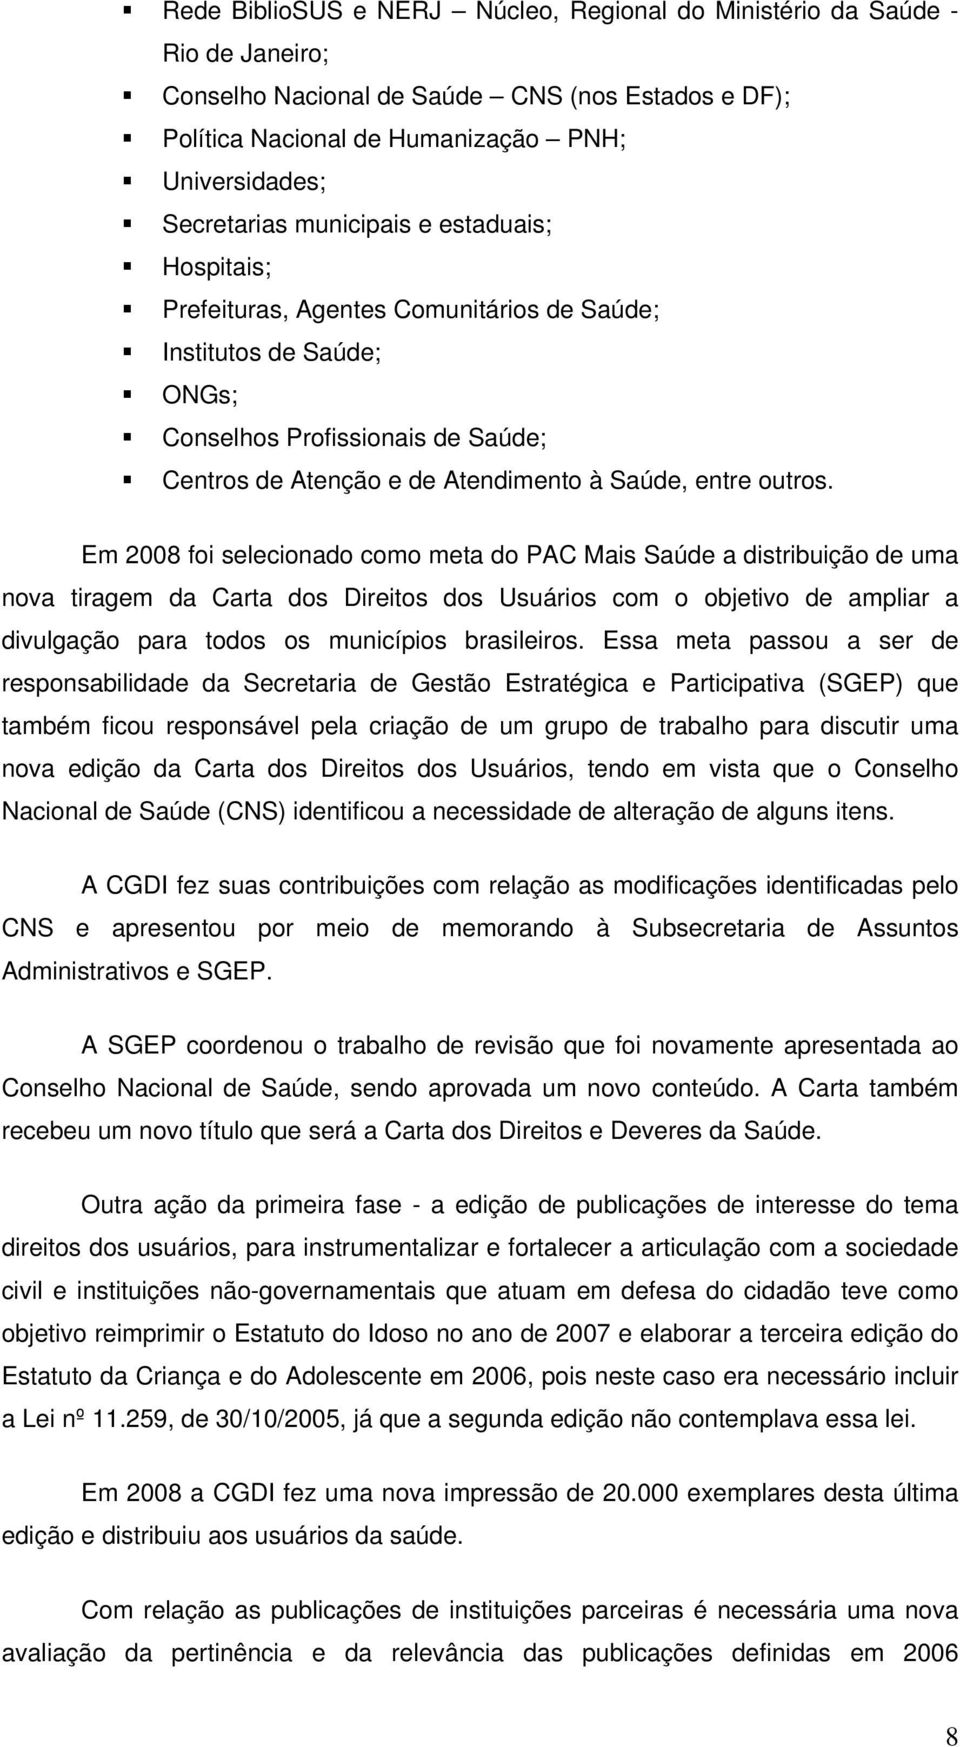 Em 2008 foi selecionado como meta do PAC Mais Saúde a distribuição de uma nova tiragem da Carta dos Direitos dos Usuários com o objetivo de ampliar a divulgação para todos os municípios brasileiros.